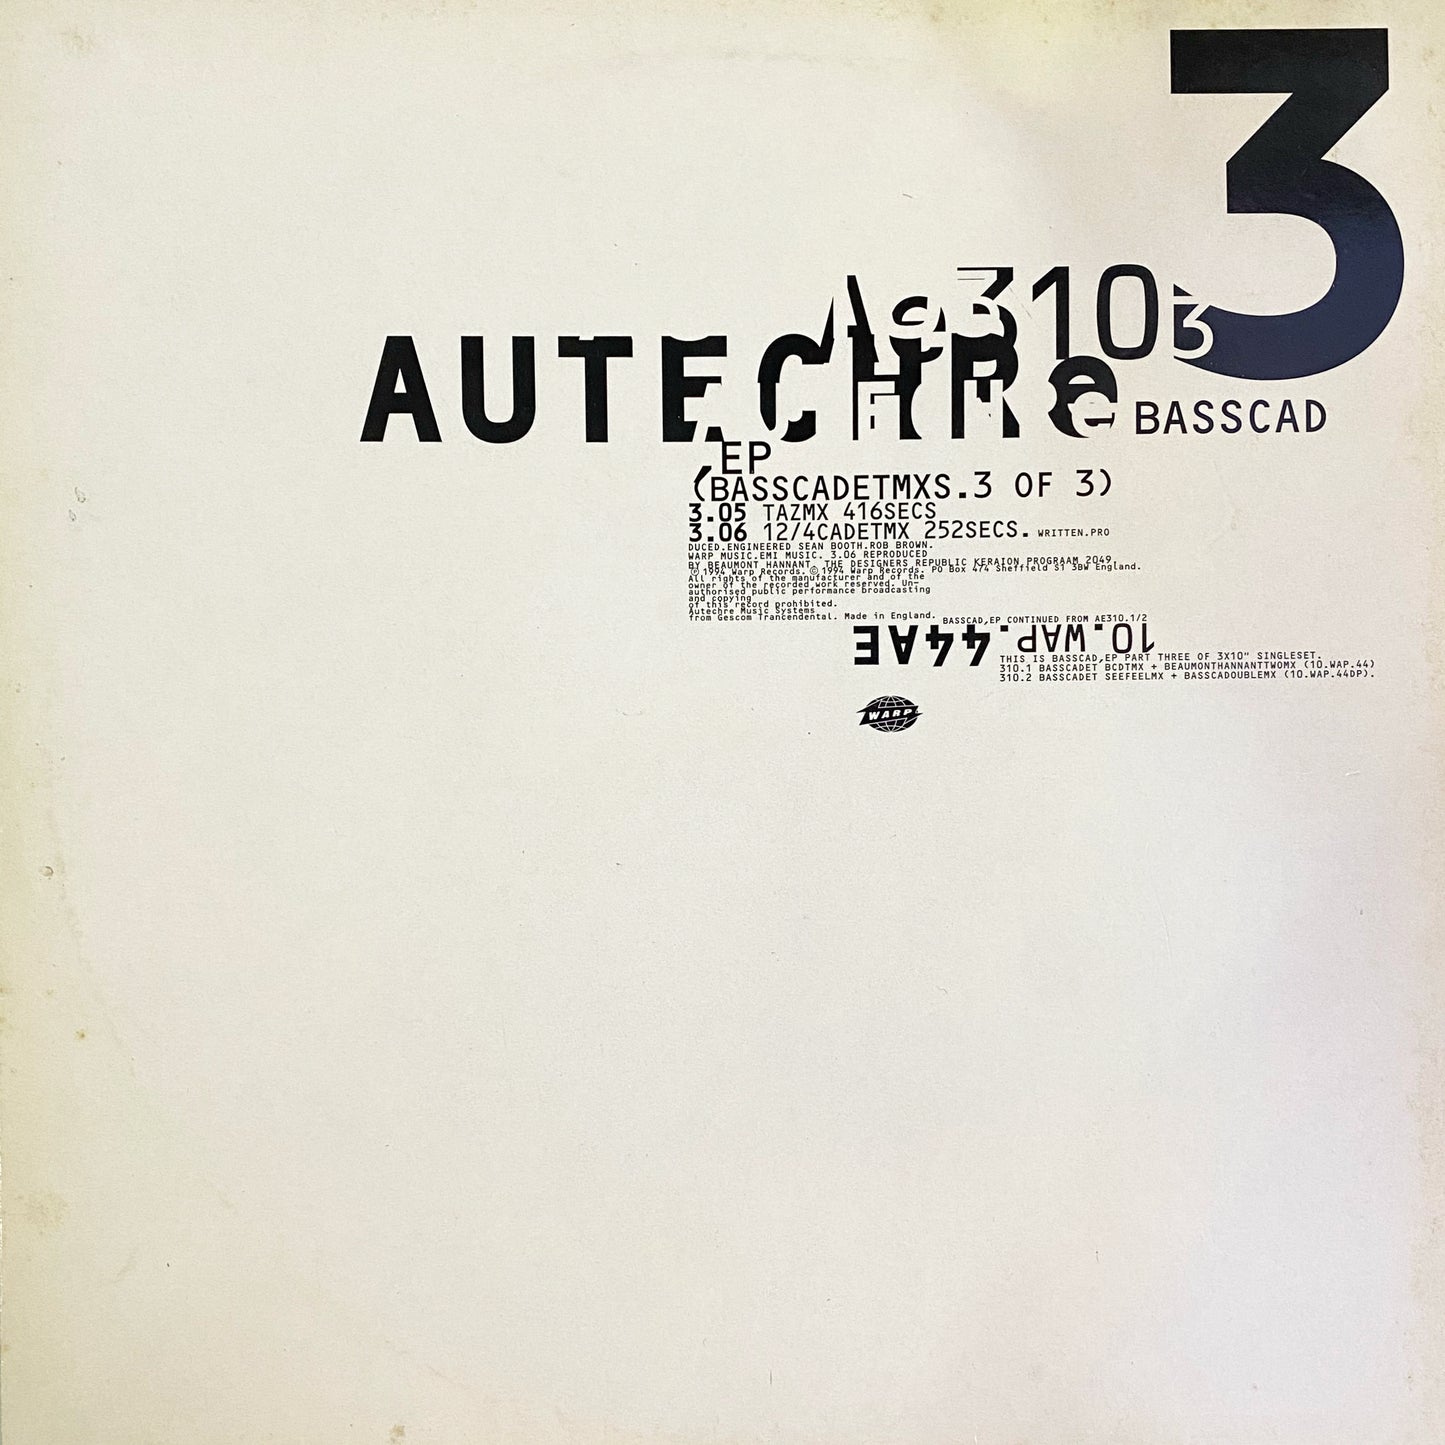 Autechre – Basscad,EP (Basscadetmxs.3 Of 3)